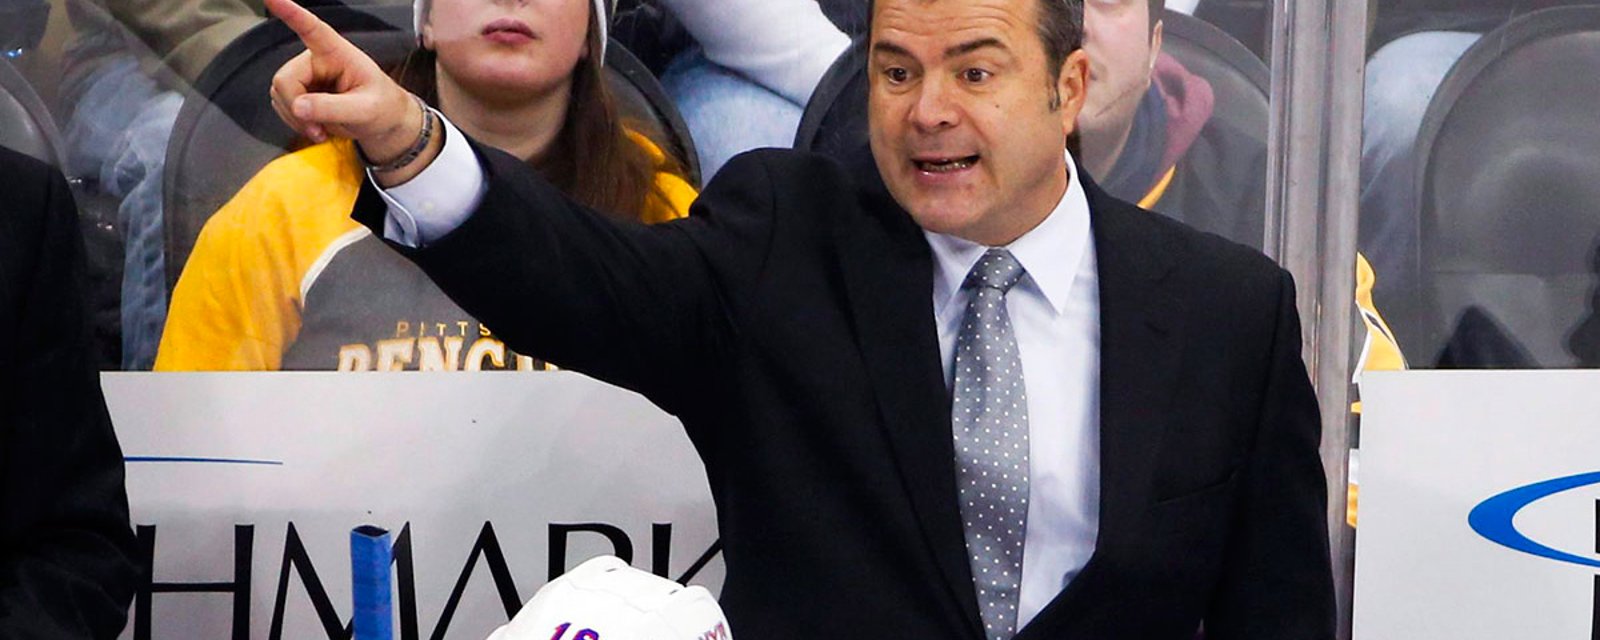 Breaking: Alain Vigneault hired as NHL head coach